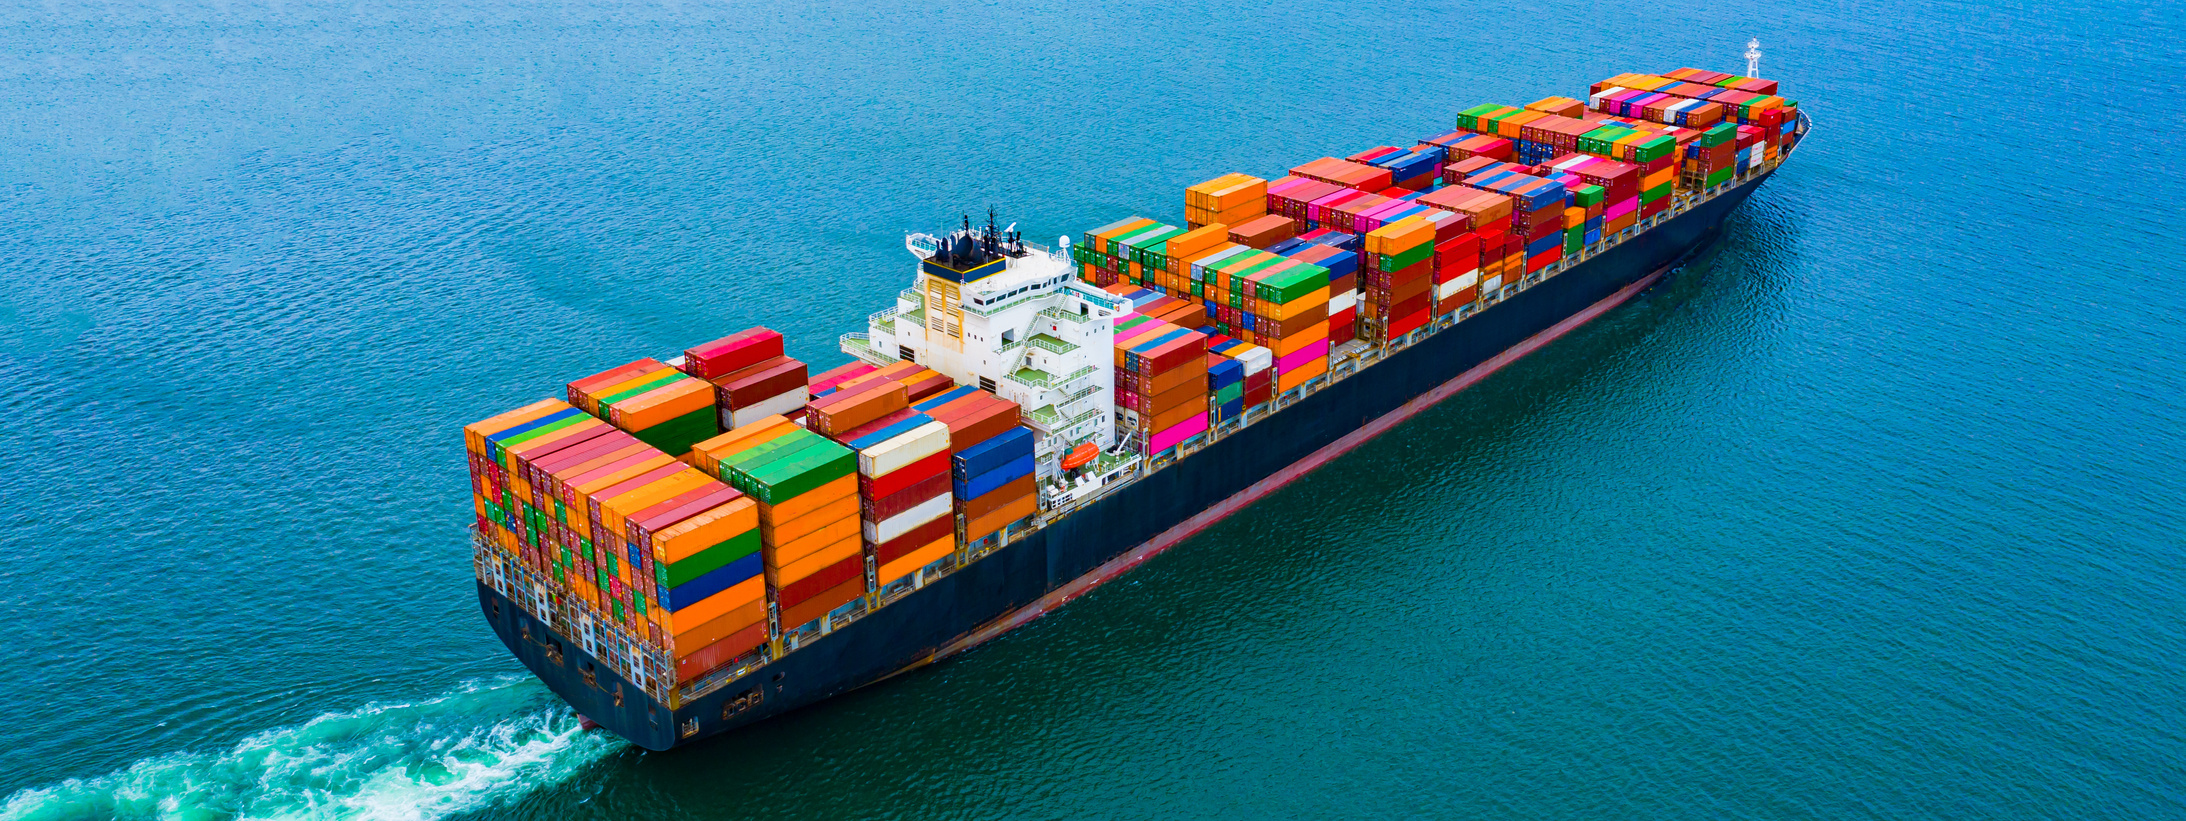 Cargo containers ship logistics transportation